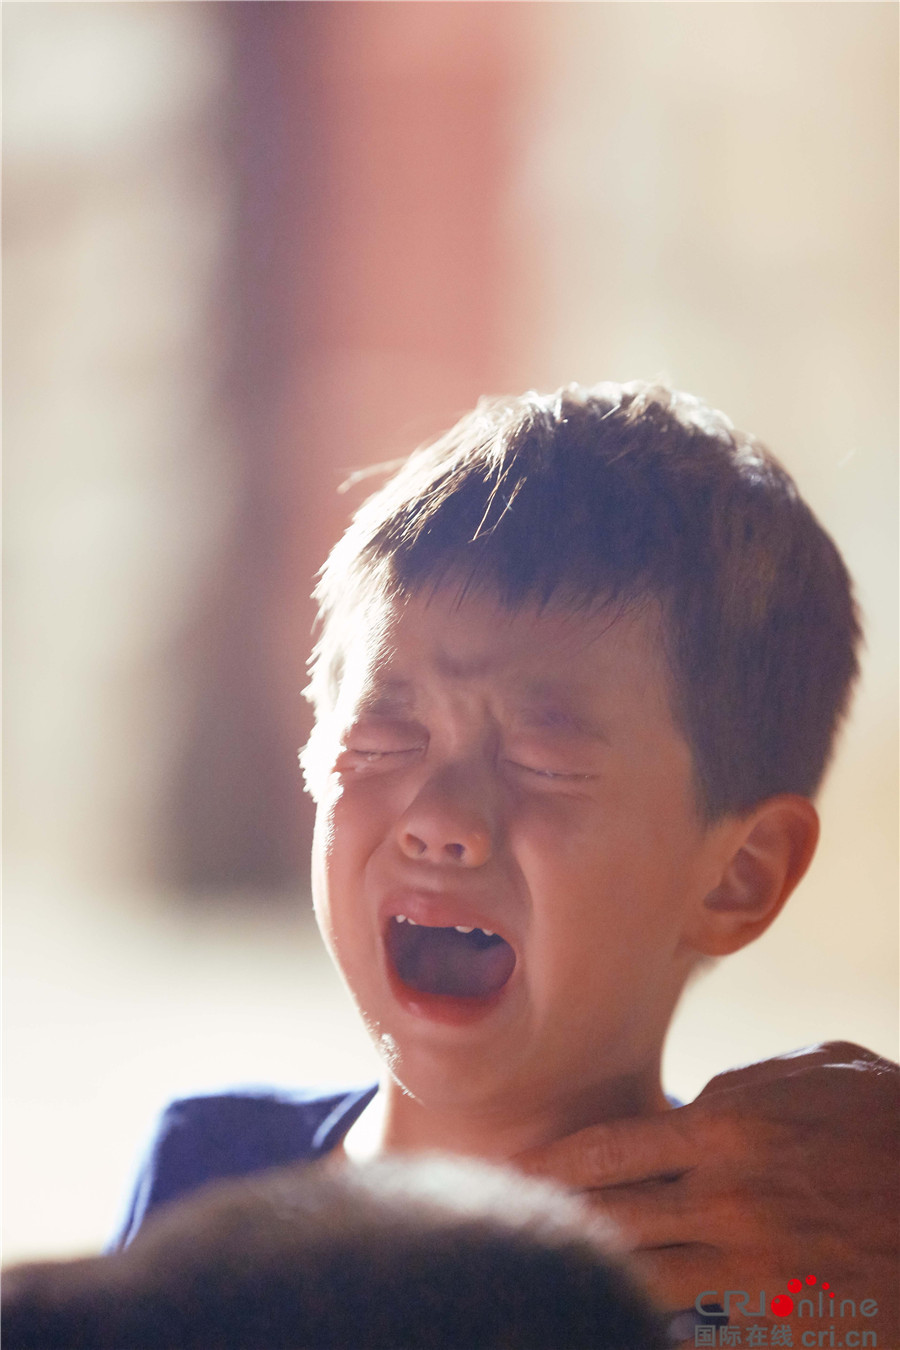 《爸爸5》杜江父子面临分离焦虑 嗯哼泪奔找爸爸